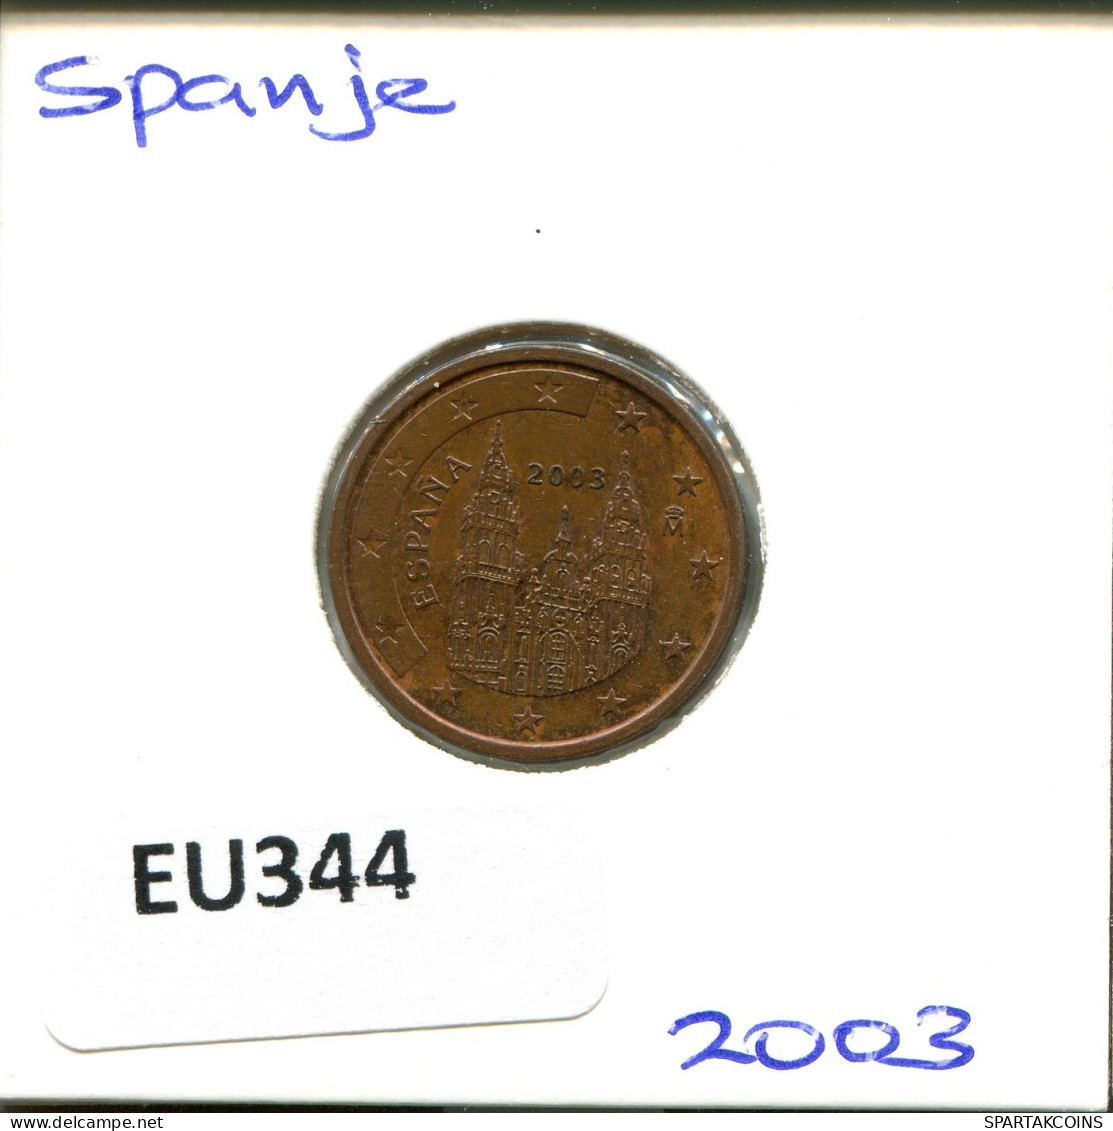 2 EURO CENTS 2003 SPAIN Coin #EU344.U.A - Spanien